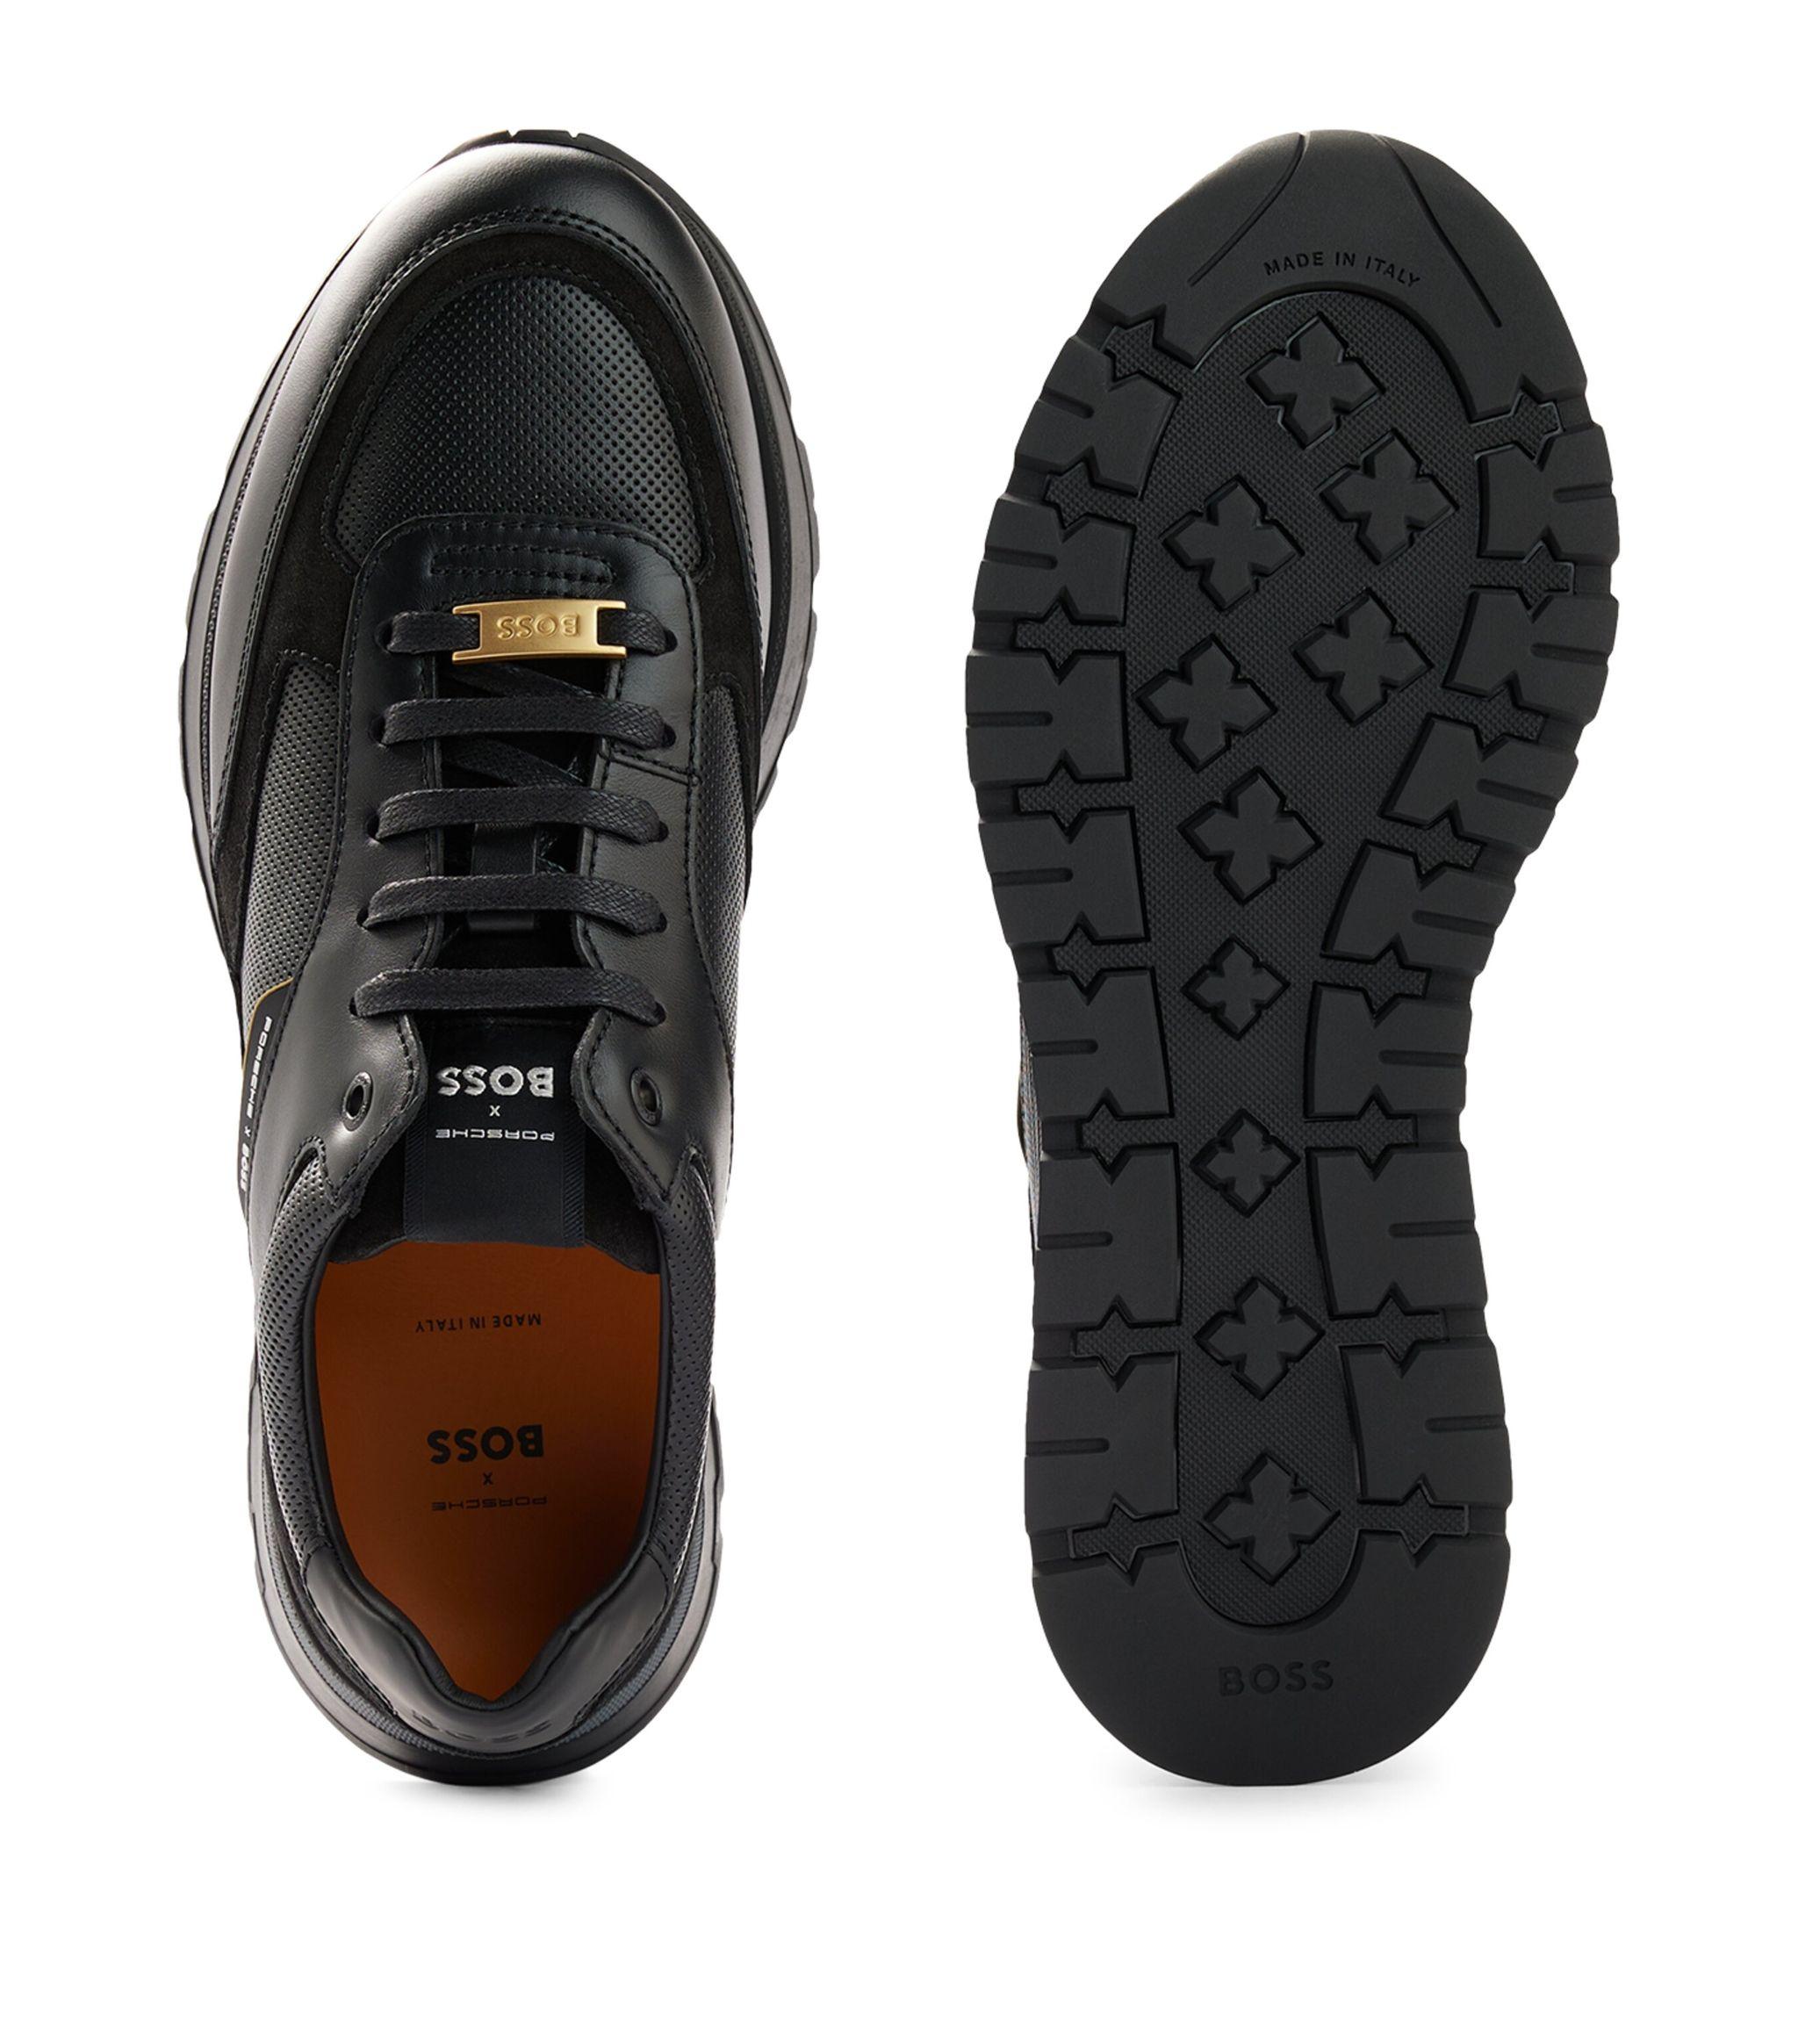 Hugo Boss Footwear JONAH-RUNN Black Leather Sneaker/Trainer - Footwear from  N22 Menswear UK